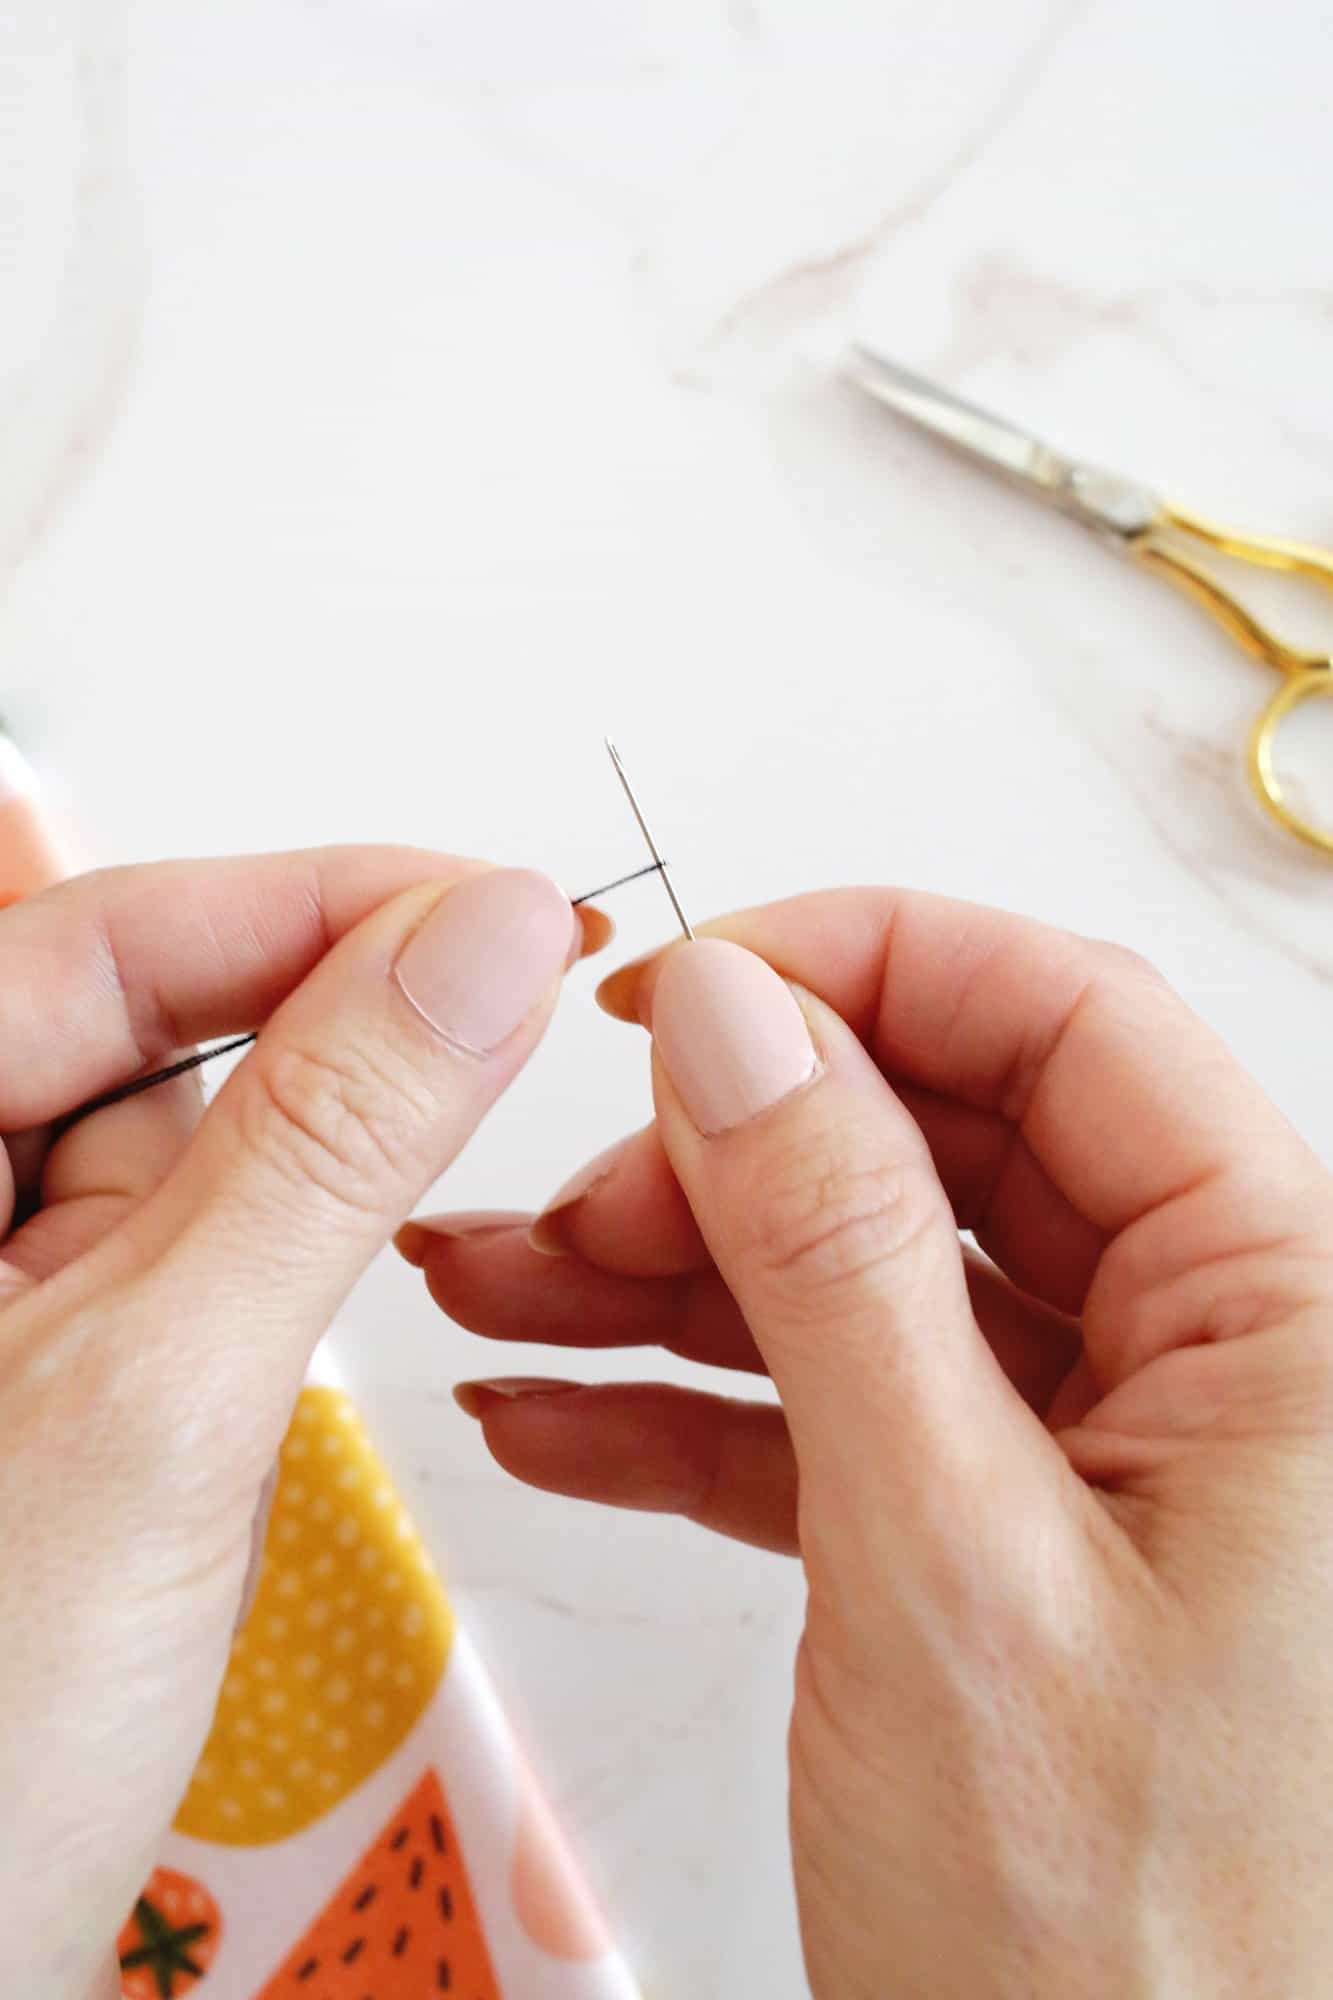 thread looped tight around a needle